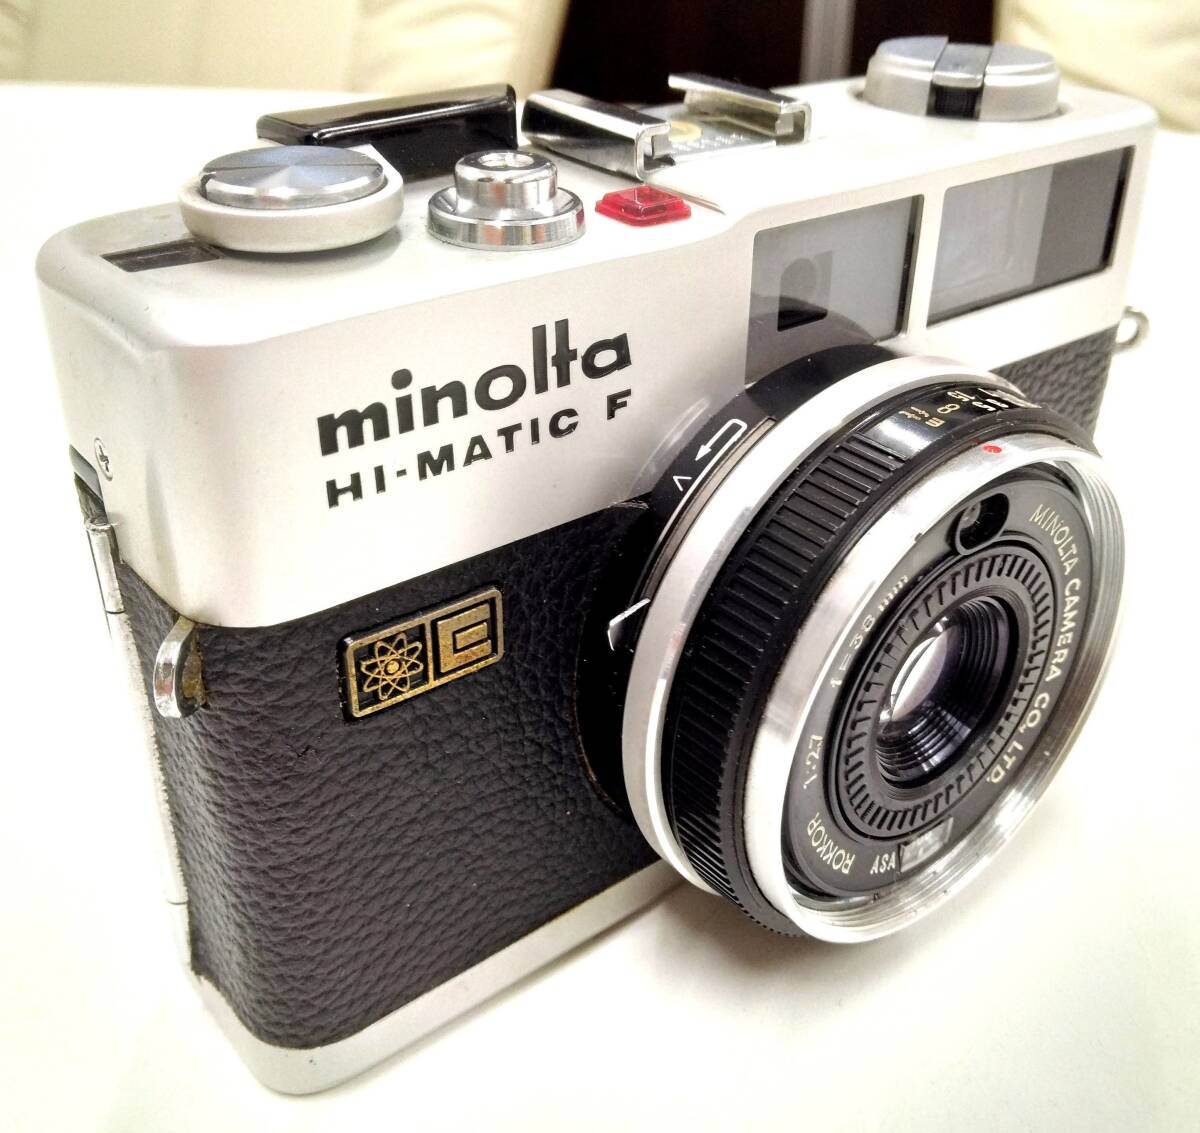 ☆minolta ミノルタ HI-MATIC F ハイマチック F レンズ ROKKOR 1:2.7 f=38mm《空シャッターOK》中古※税込価格_画像2